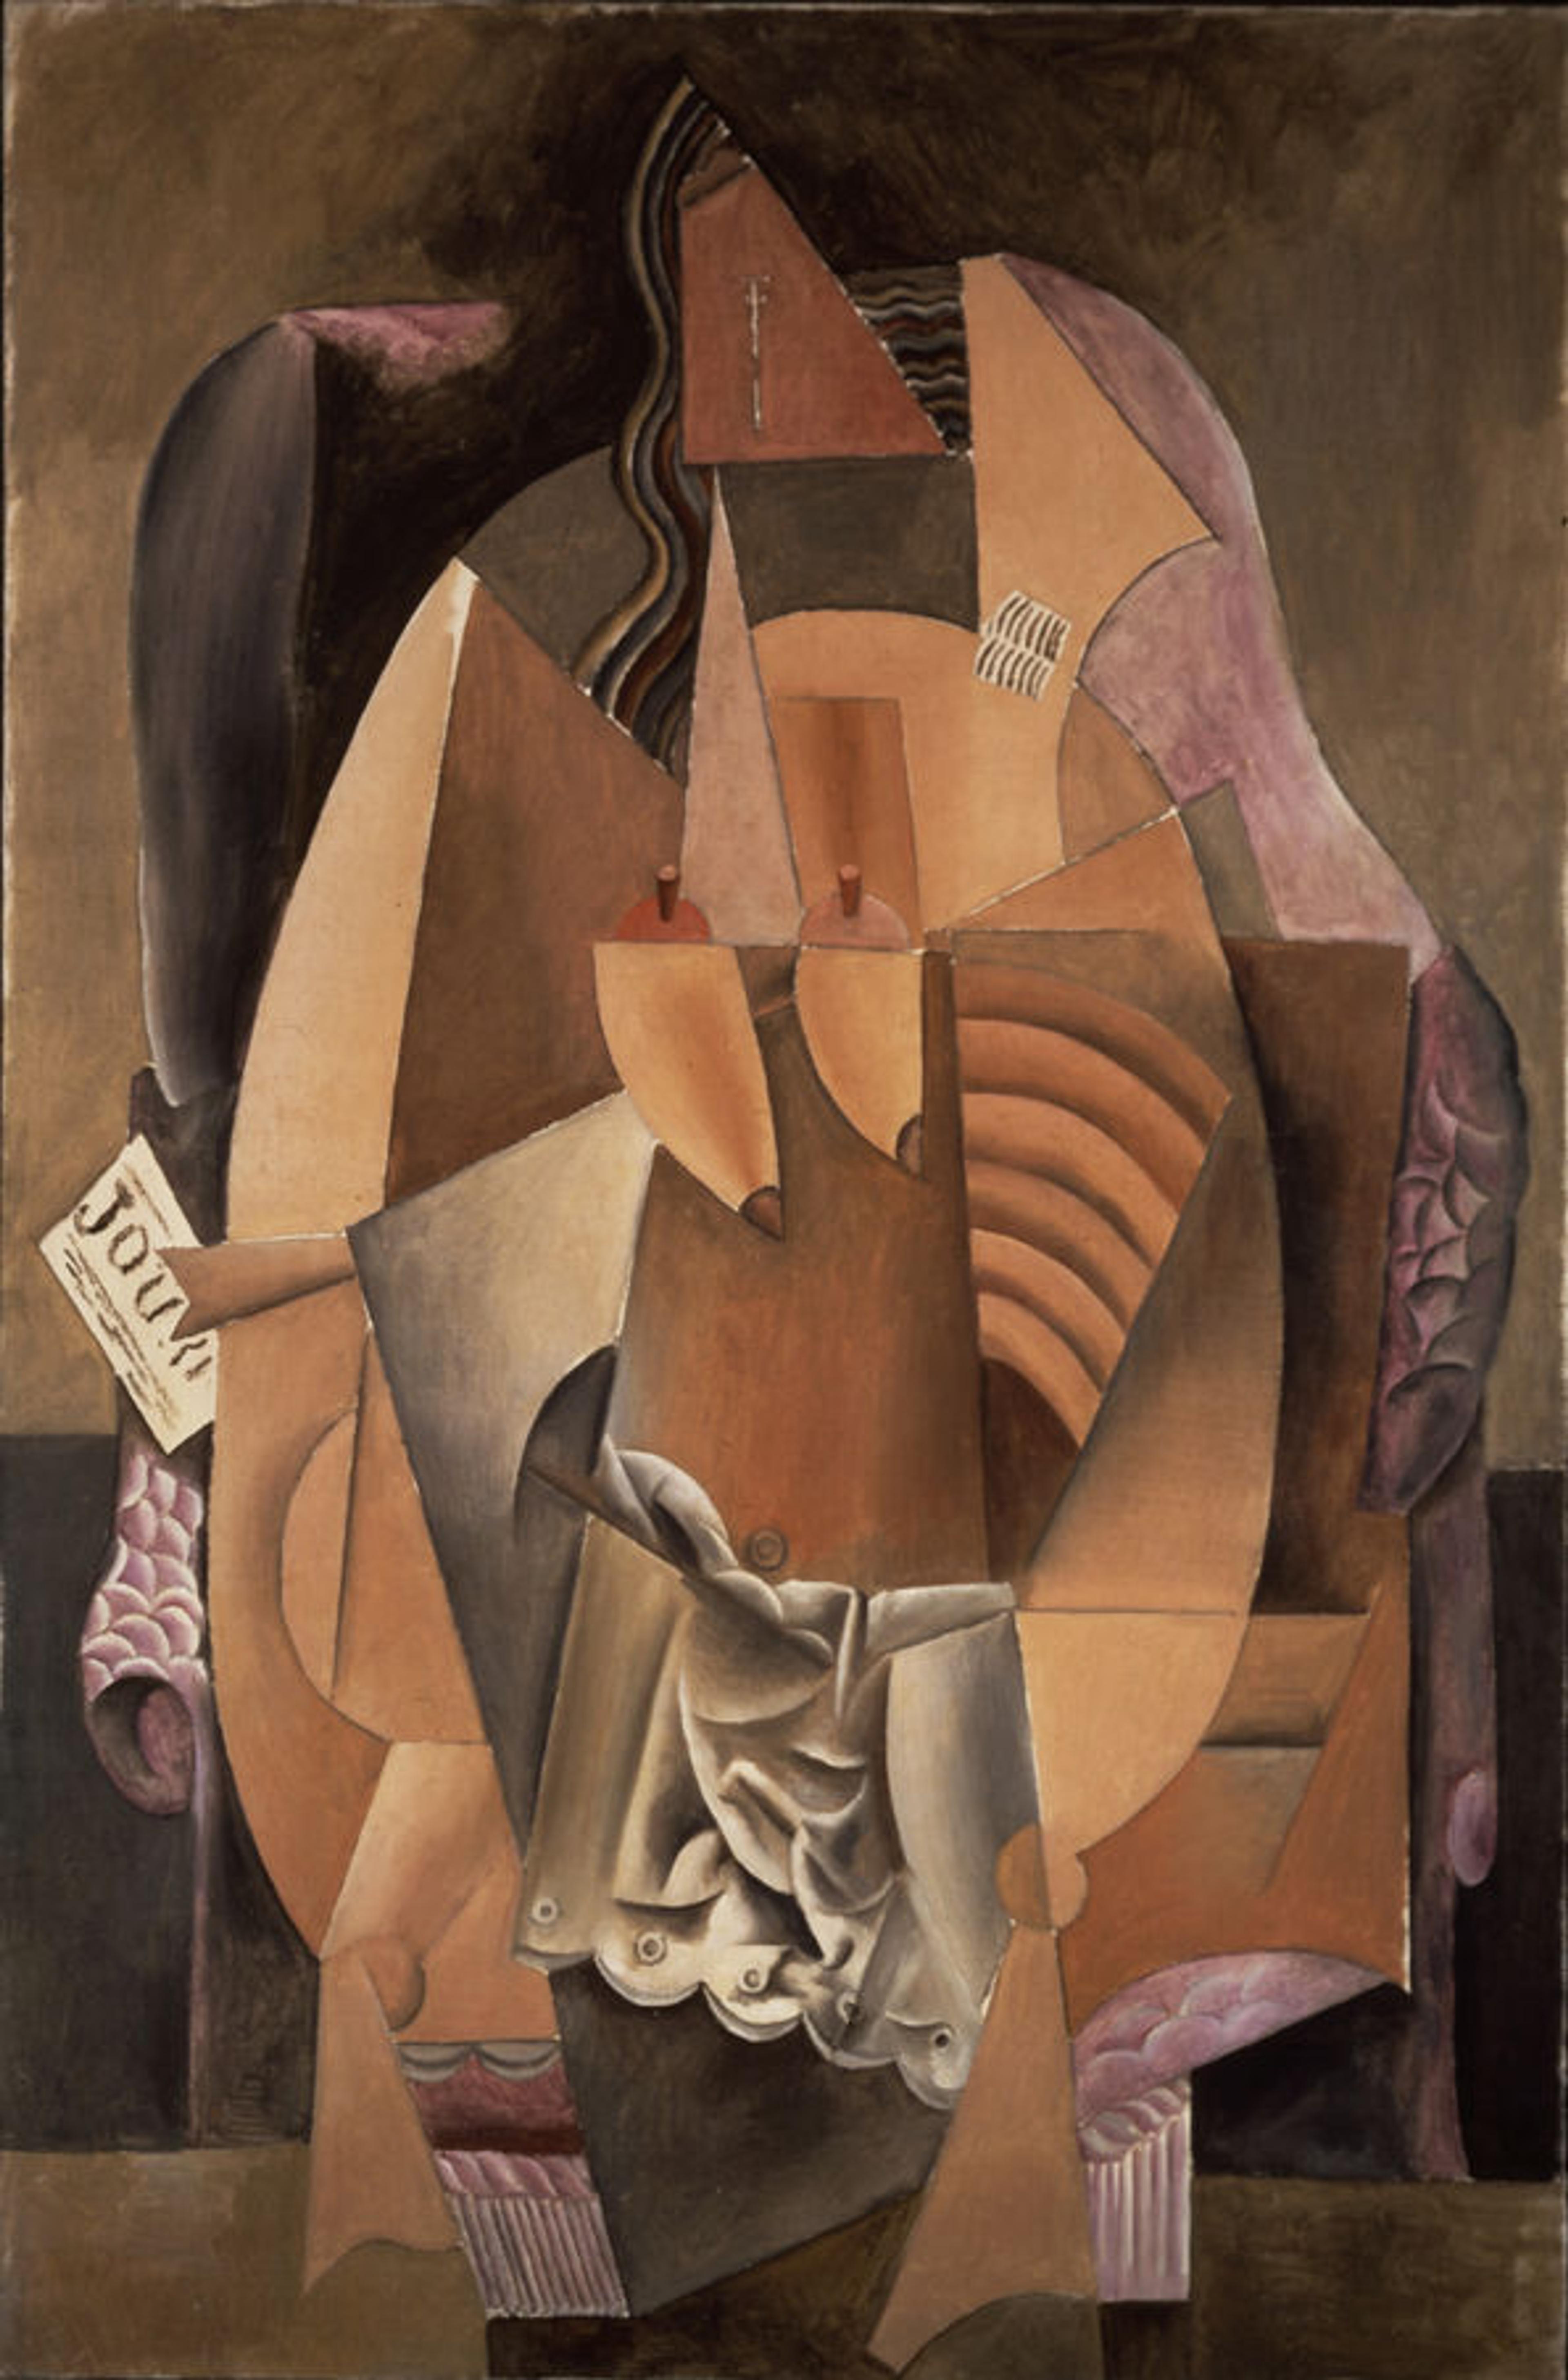 Pablo Picasso - Femme assise dans un fauteuil (Eva) (Woman in an Armchair)